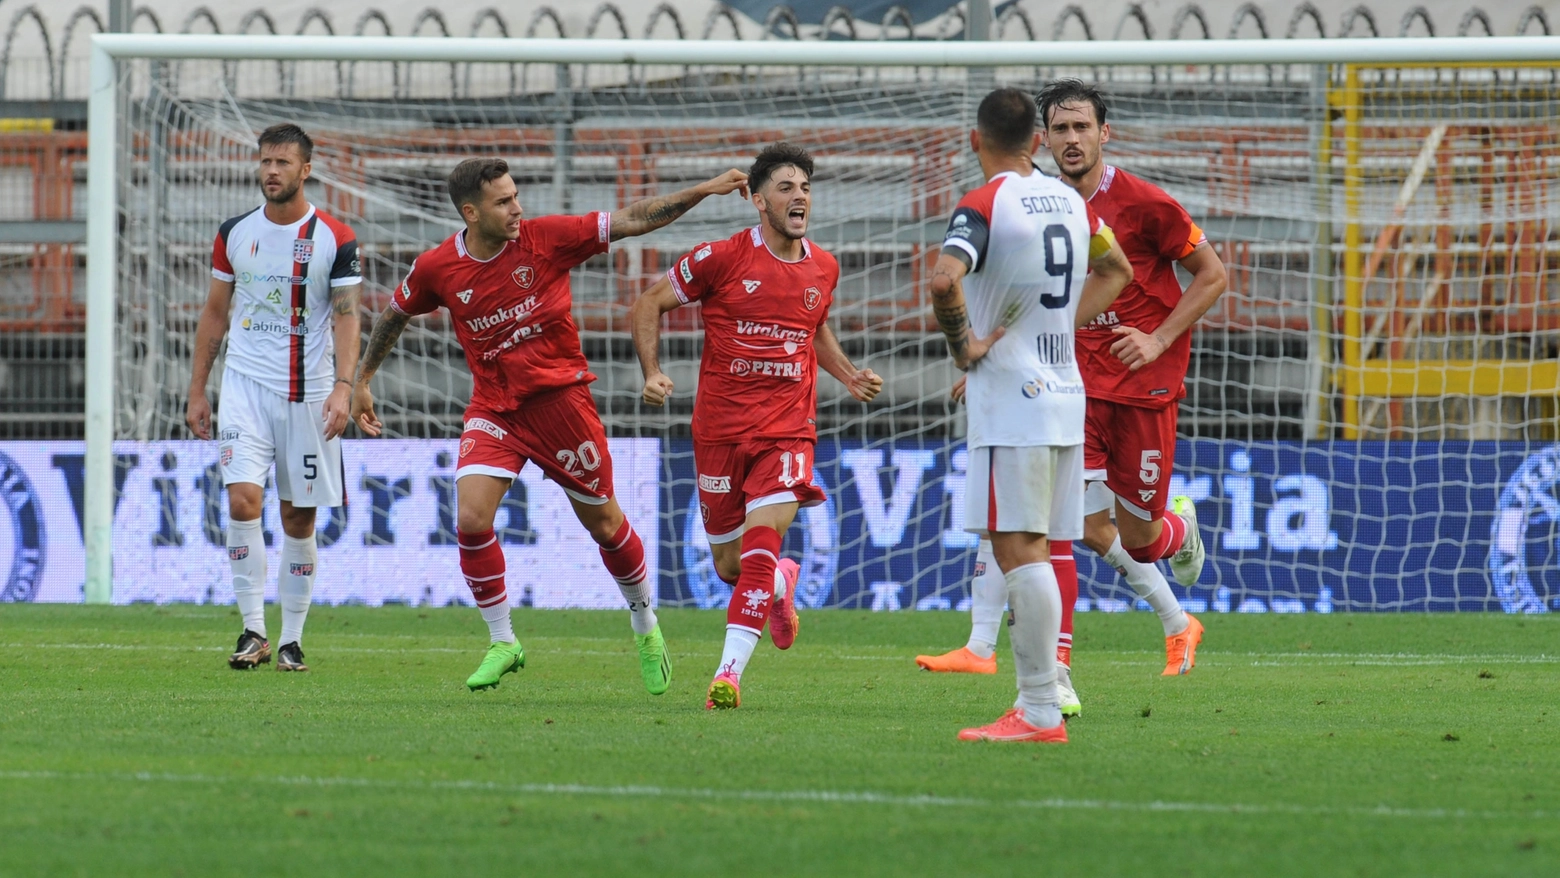 Perugia-Torres, esultanza dopo il gol di Seghetti (foto Crocchioni)